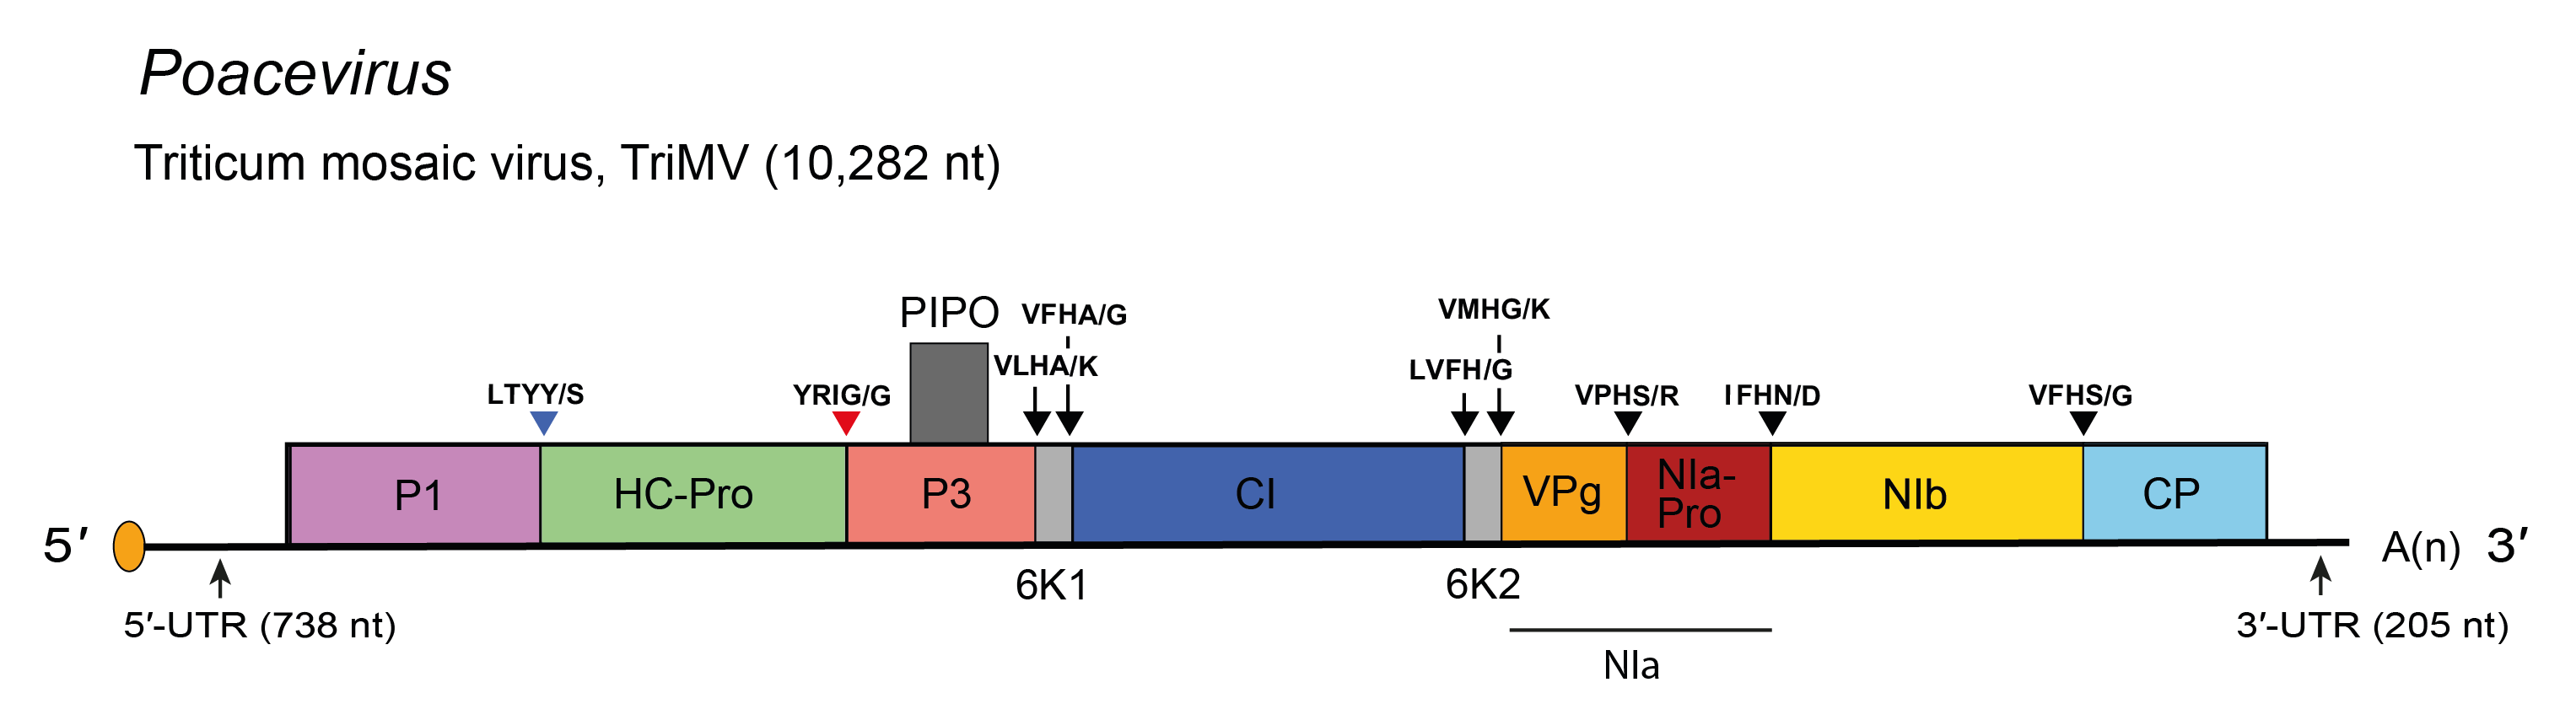 Genome diagram Poacevirus